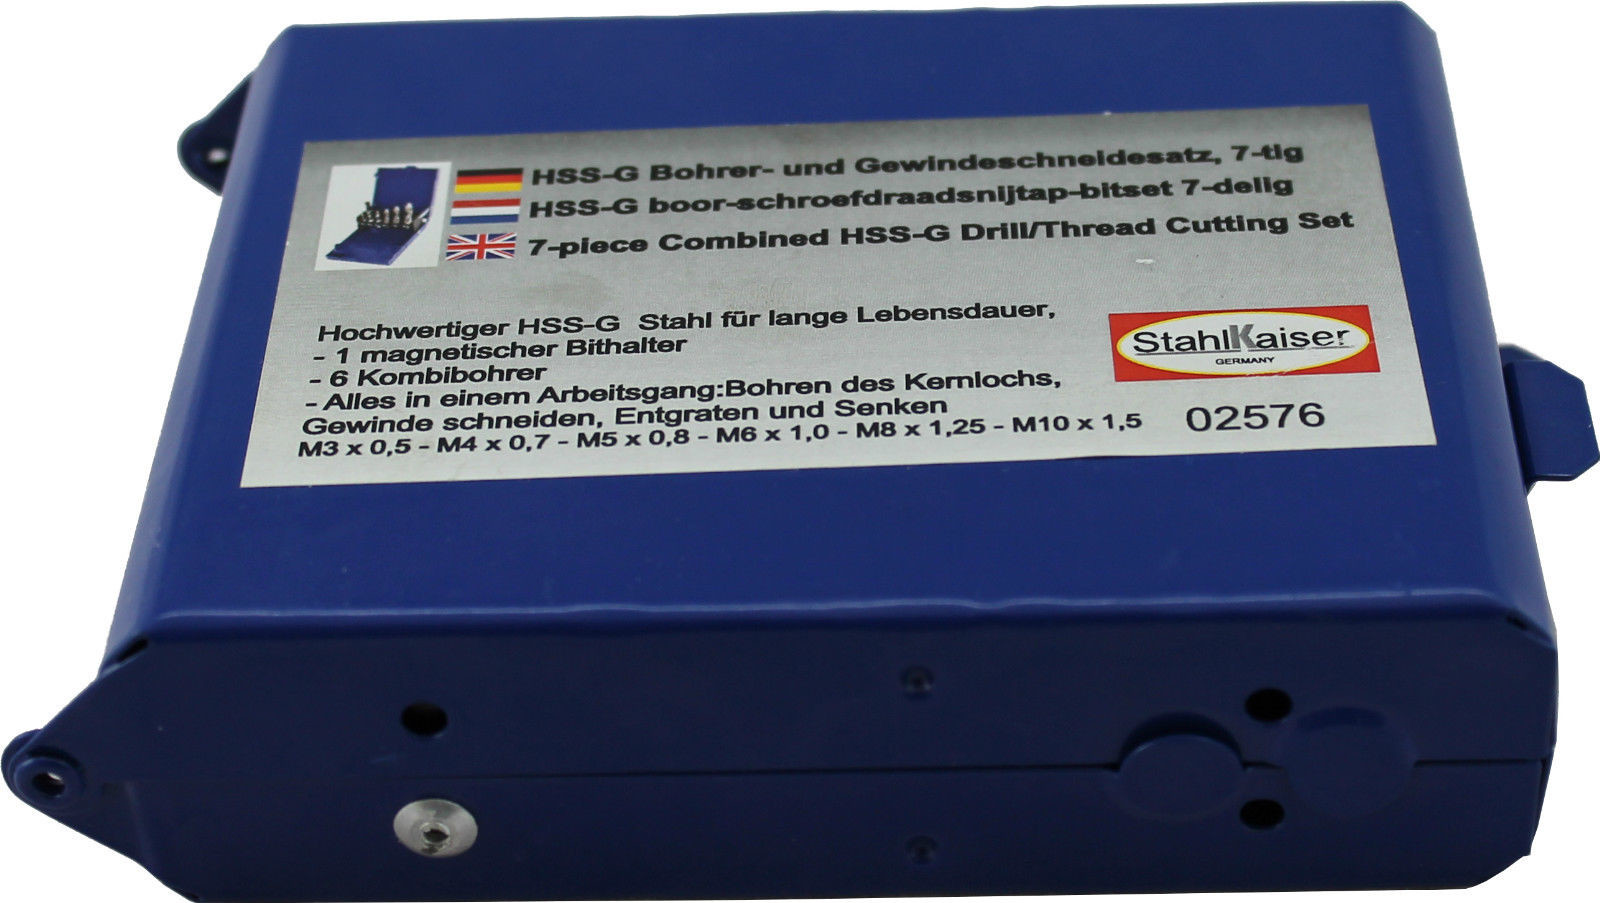 7-teiliger HSS G Bohrer- und Gewindeschneidesatz in praktischer Metall-Box